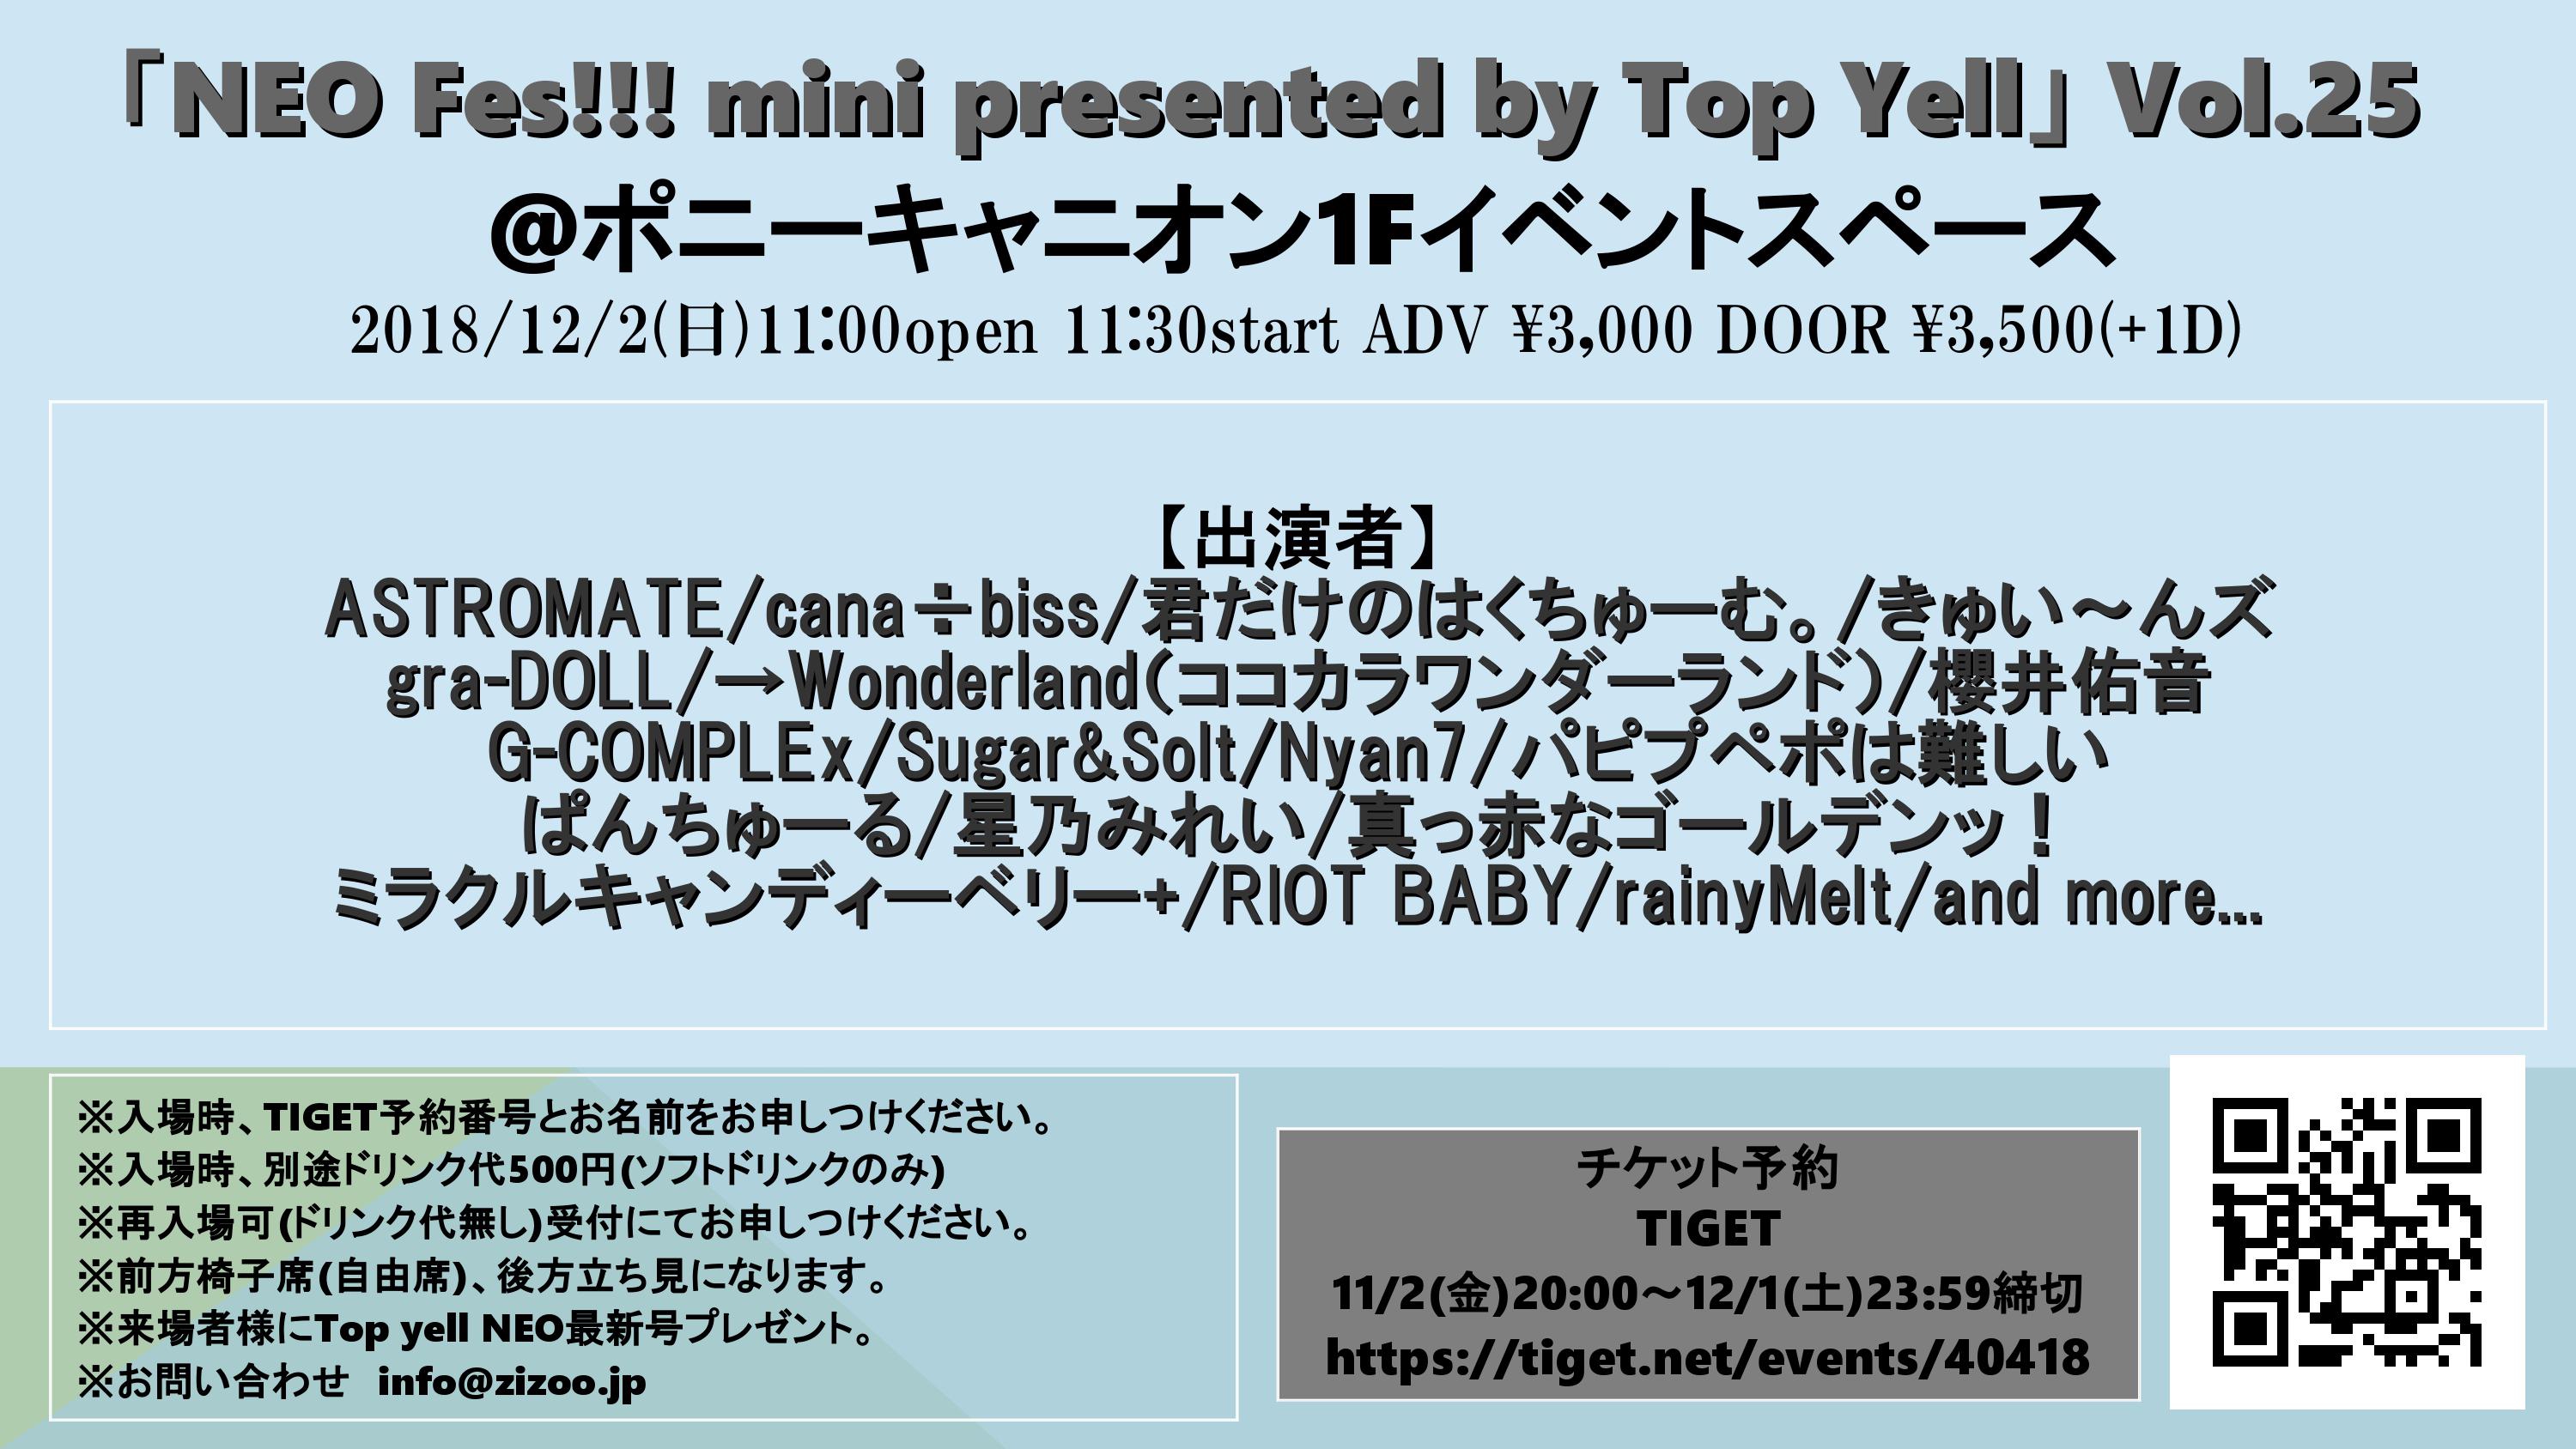 12月2日 日 Neo Fes Mini Presented By Top Yell Vol 25 Gra Doll